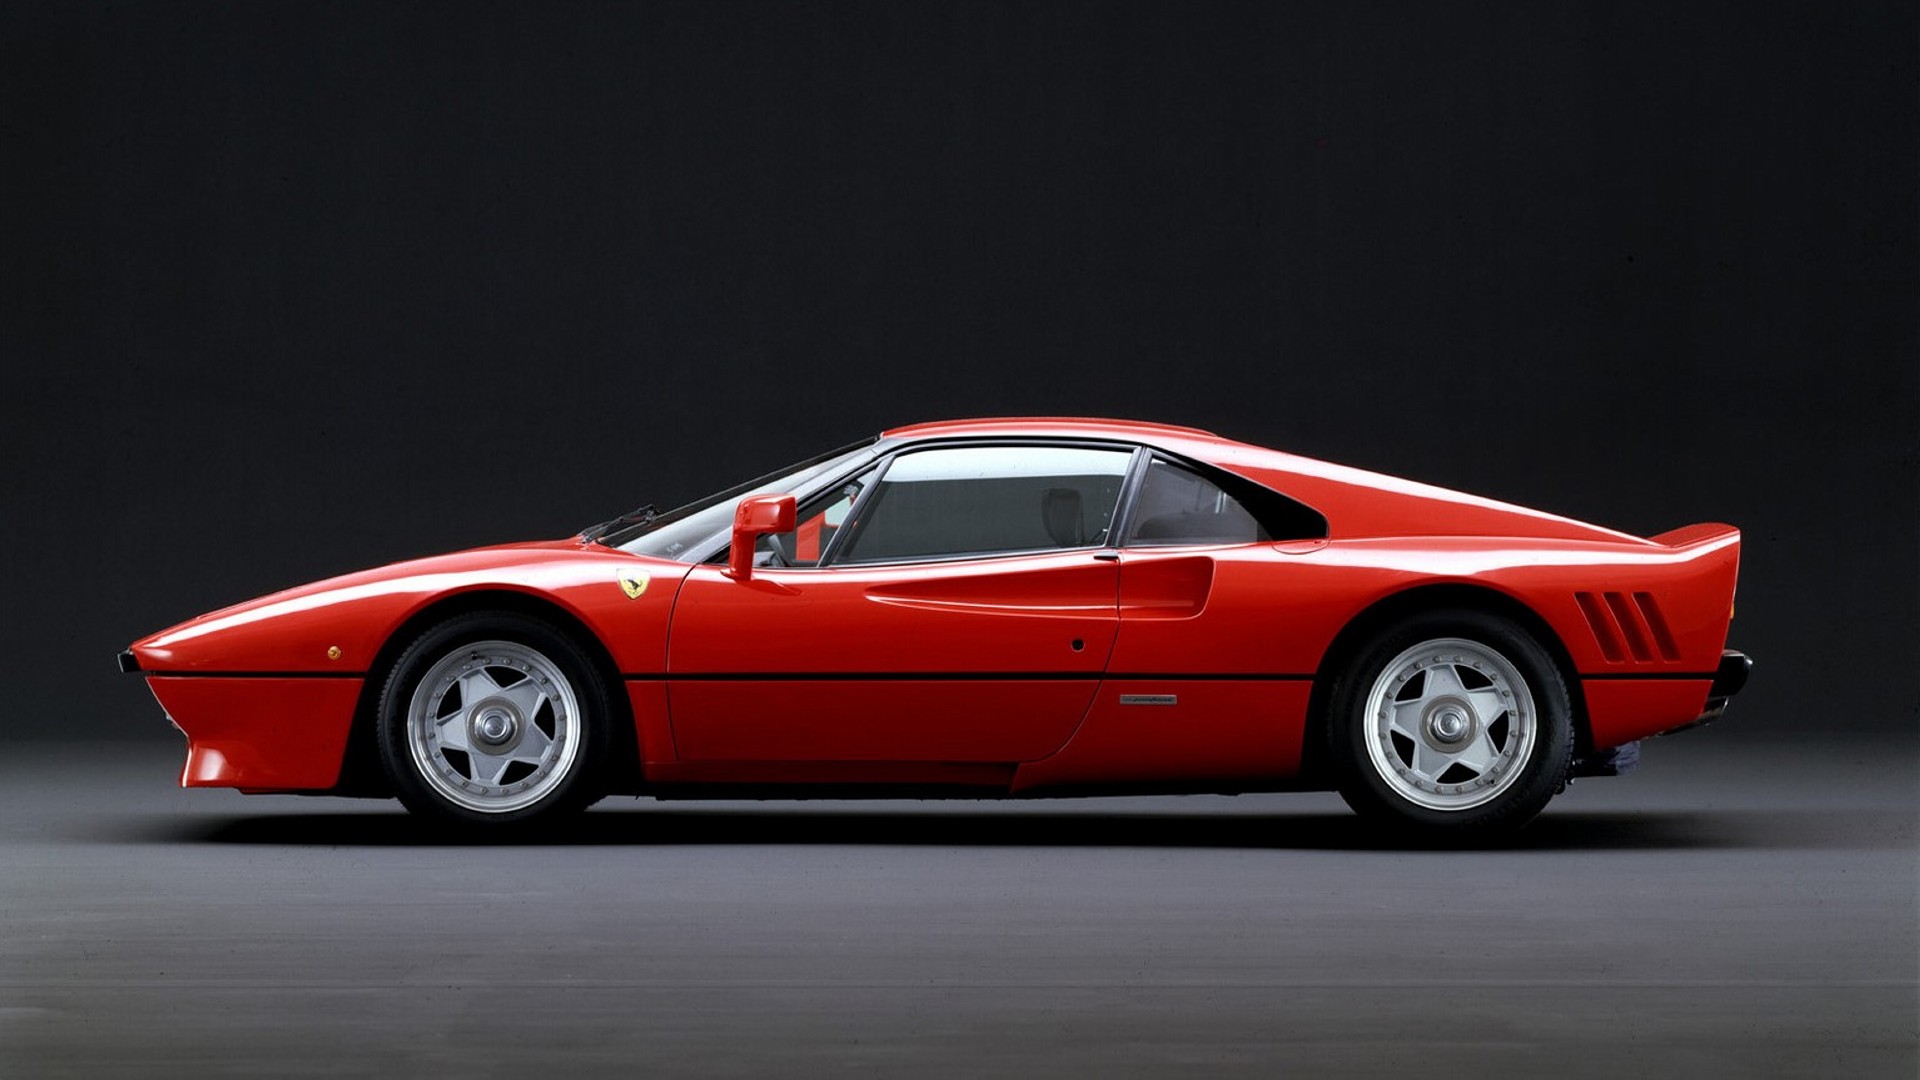 Alain de Cadenet nos recuerda por qué el Ferrari 288 GTO es tan especial